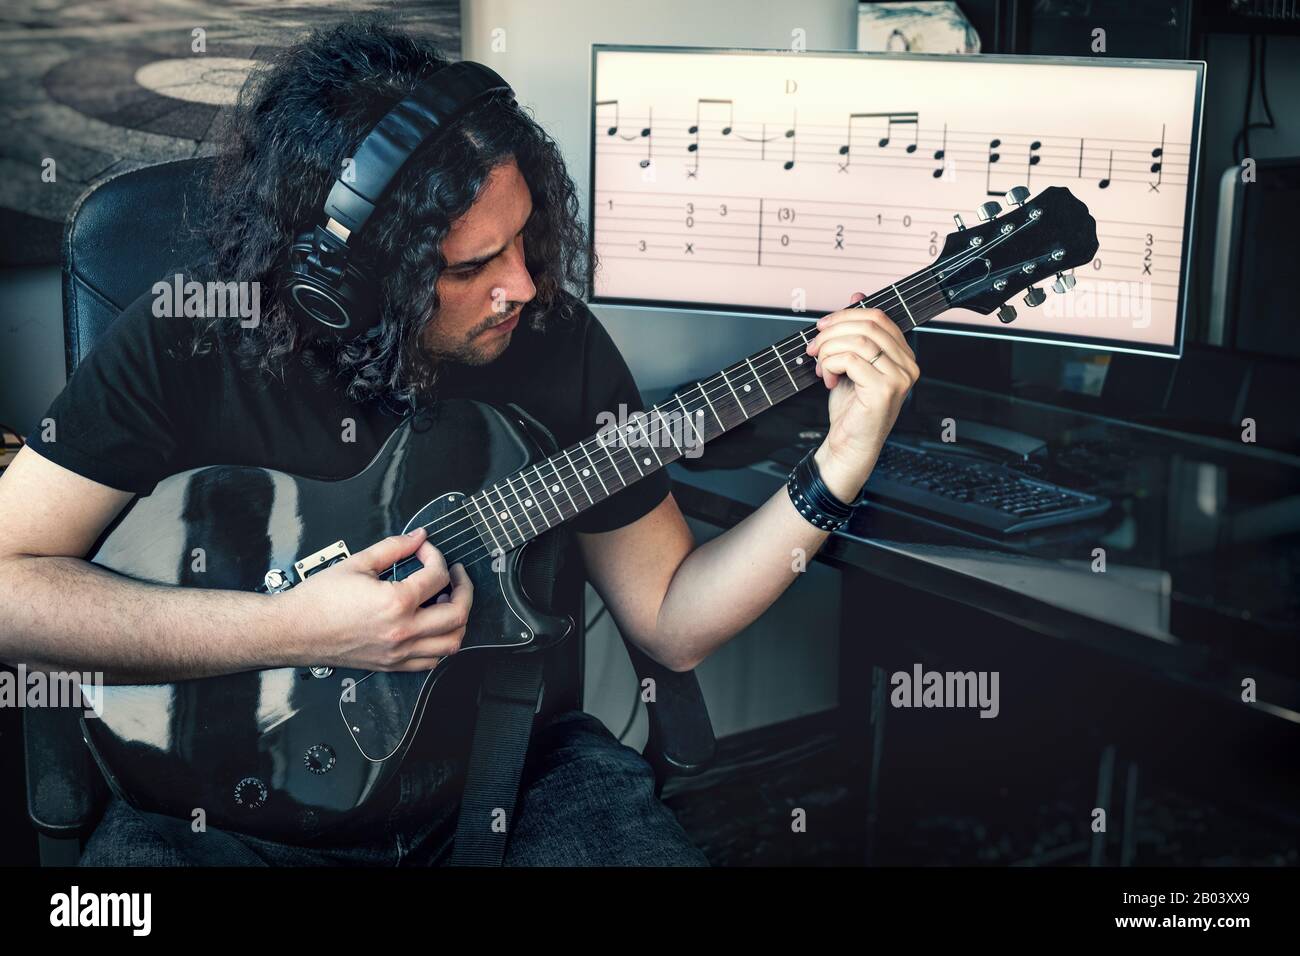 musicien de rock à poil long, homme avec casque, joue de la guitare électrique avec des partitions musicales sur fond d'écran Banque D'Images